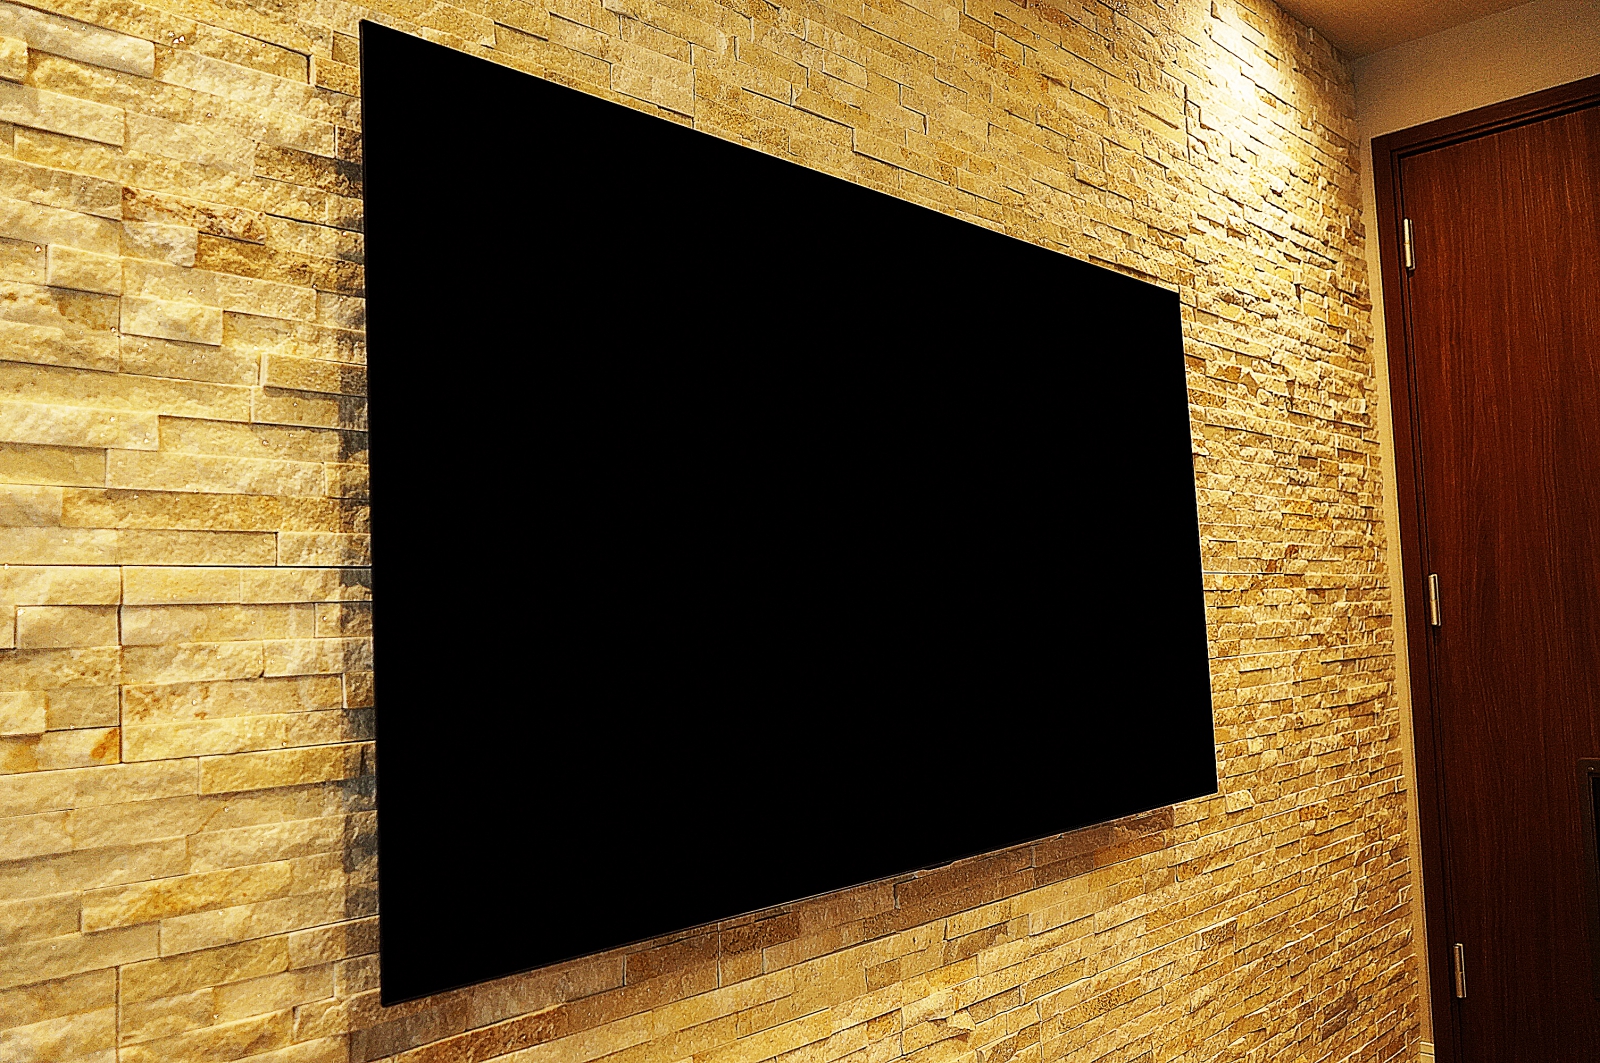 デザインウォールがとても美しく壁掛けテレビの事を考えられた空間にLG製・65インチ有機ELテレビ「OLED65C8PJA」を壁掛け